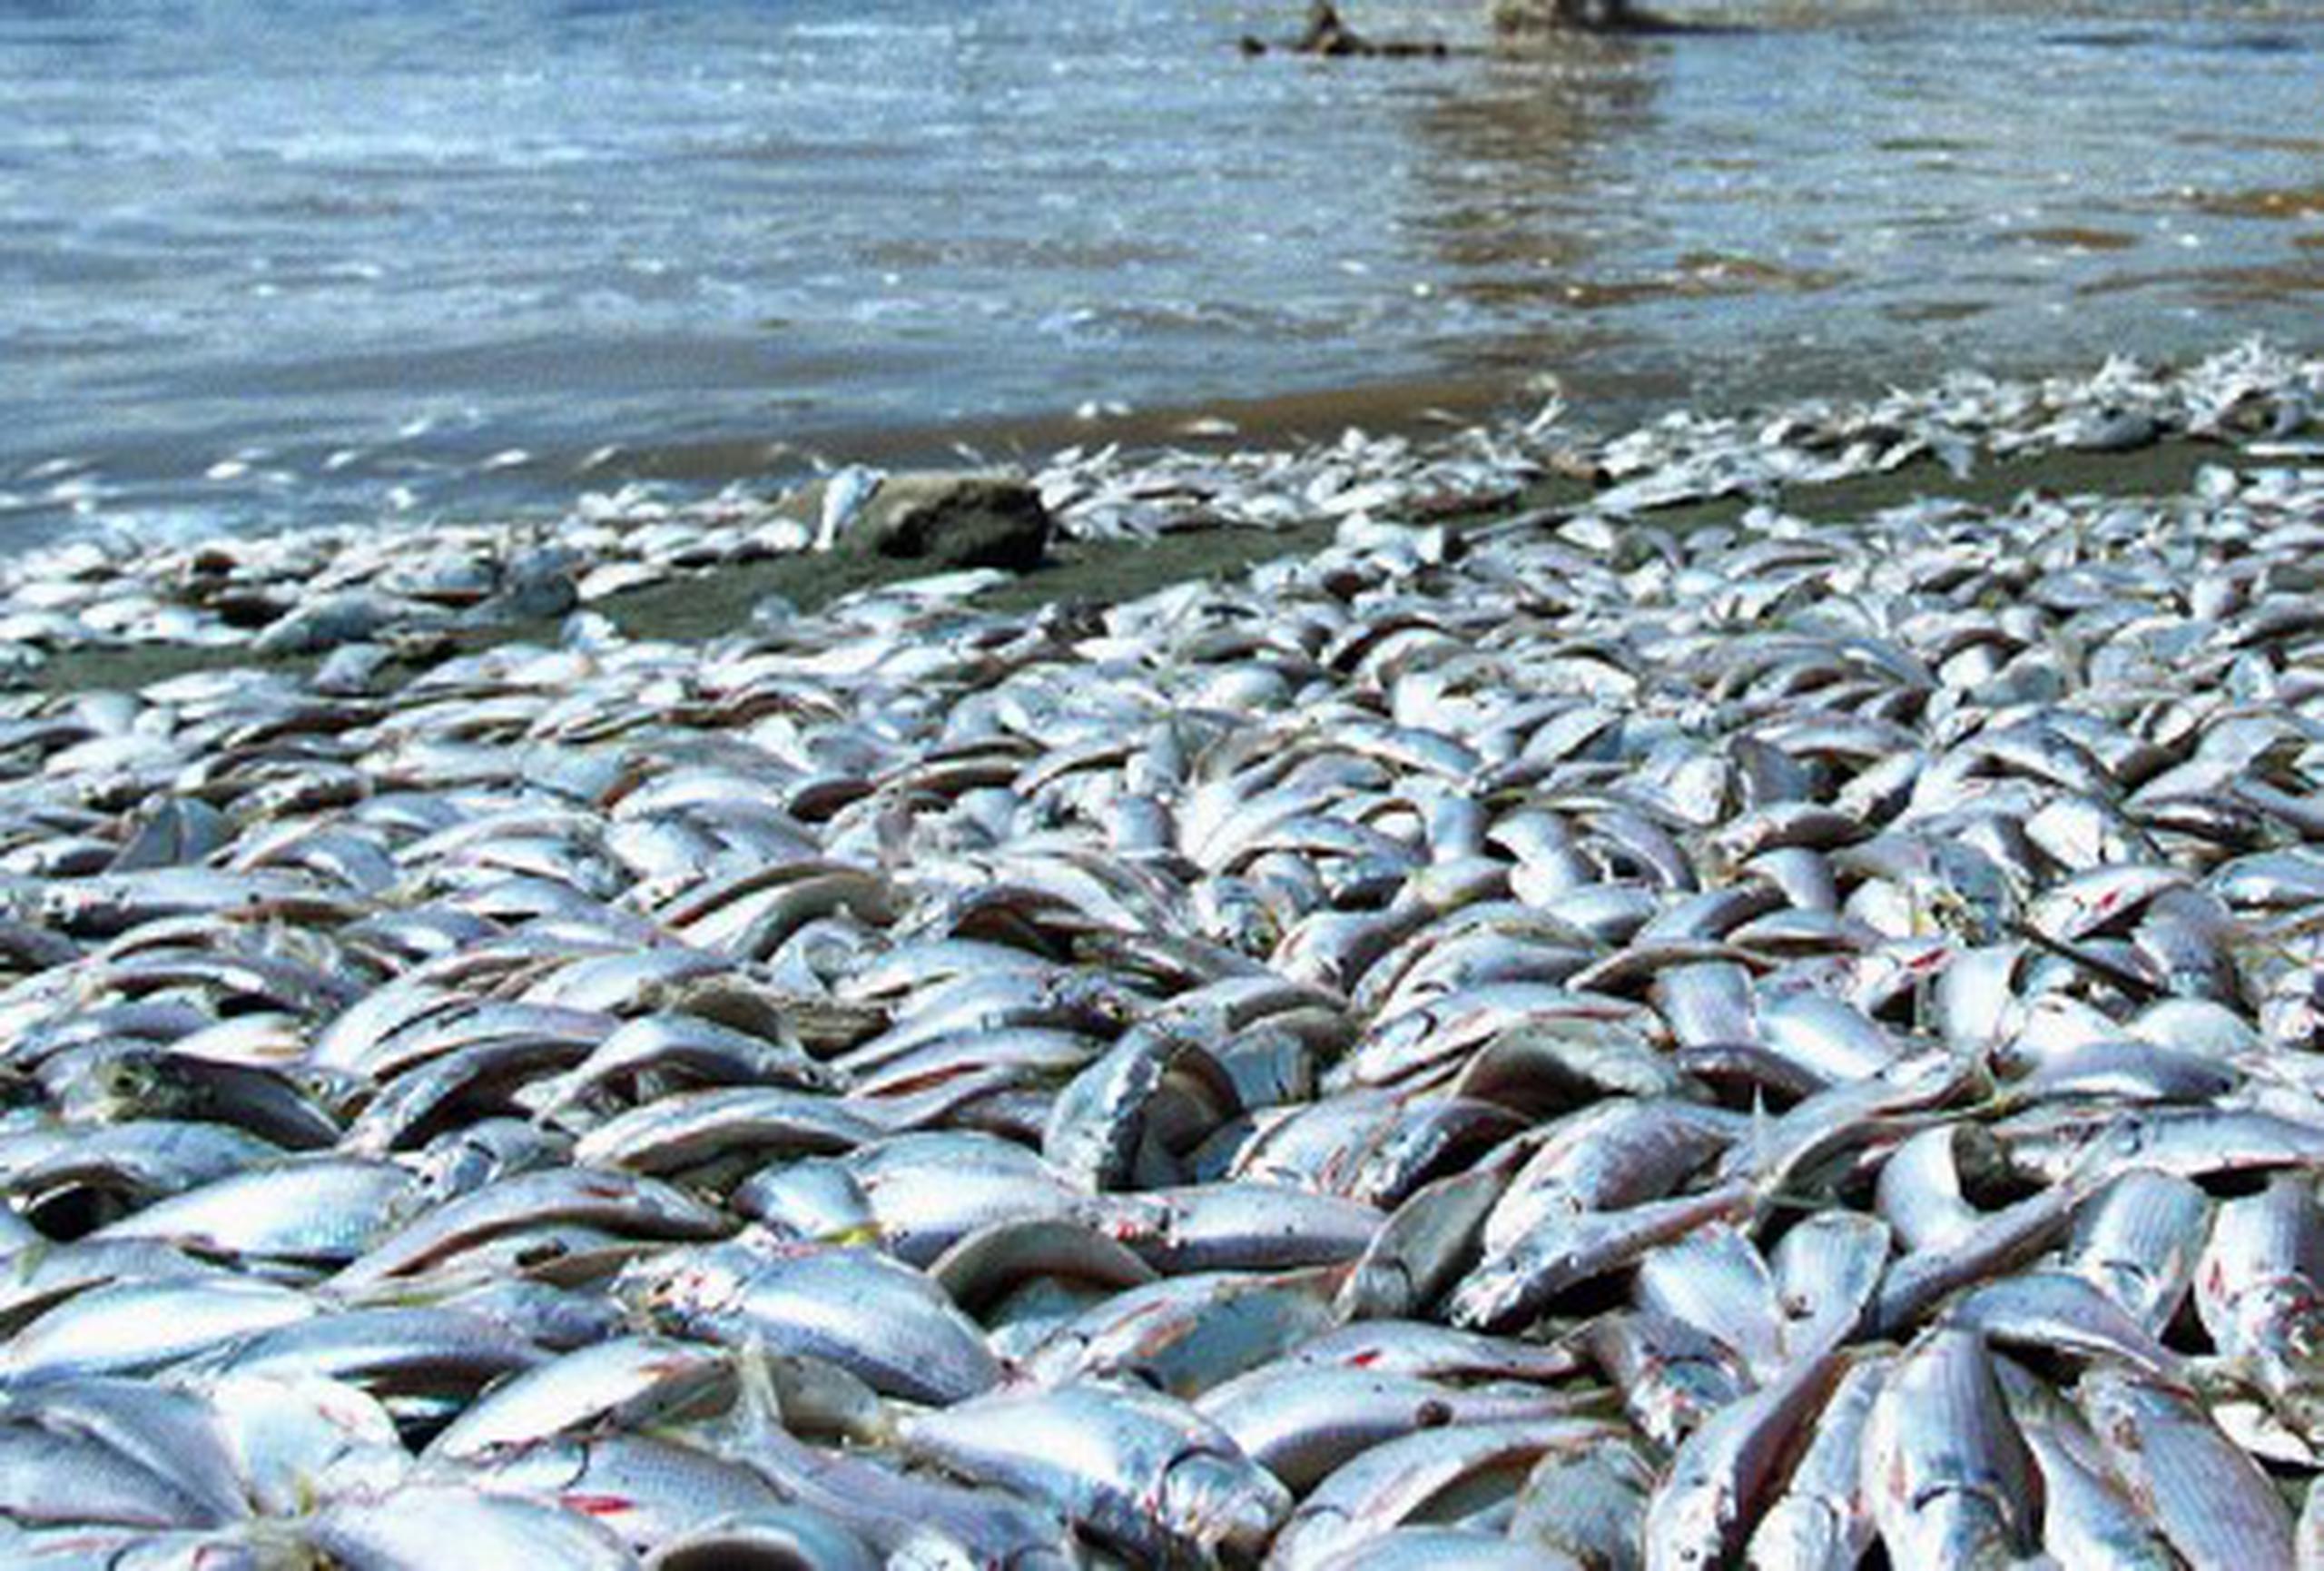 La marea roja ha dejado en los últimos días miles de peces muertos en playas de la costa oeste de Florida. (Archivo)